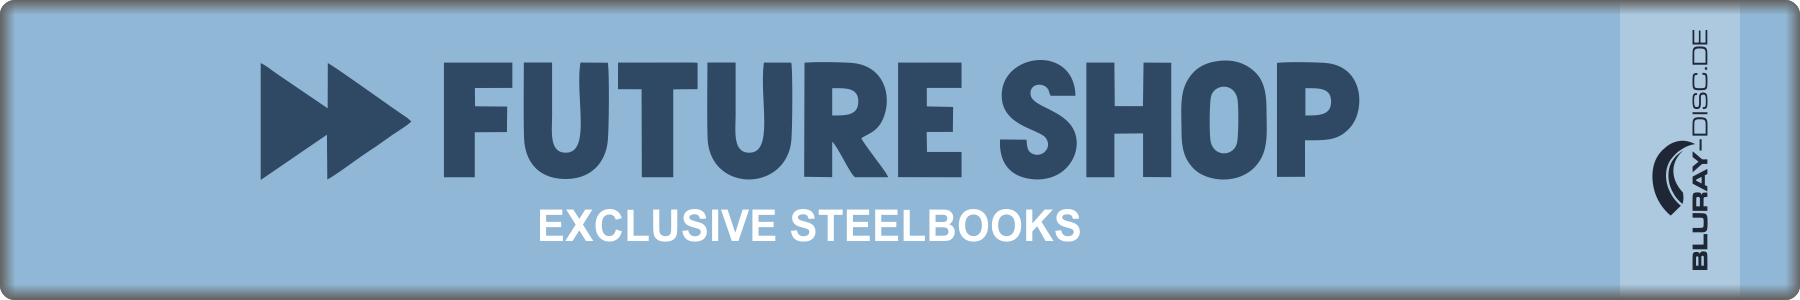 FutureShop_Exclusive_Steelbooks.png